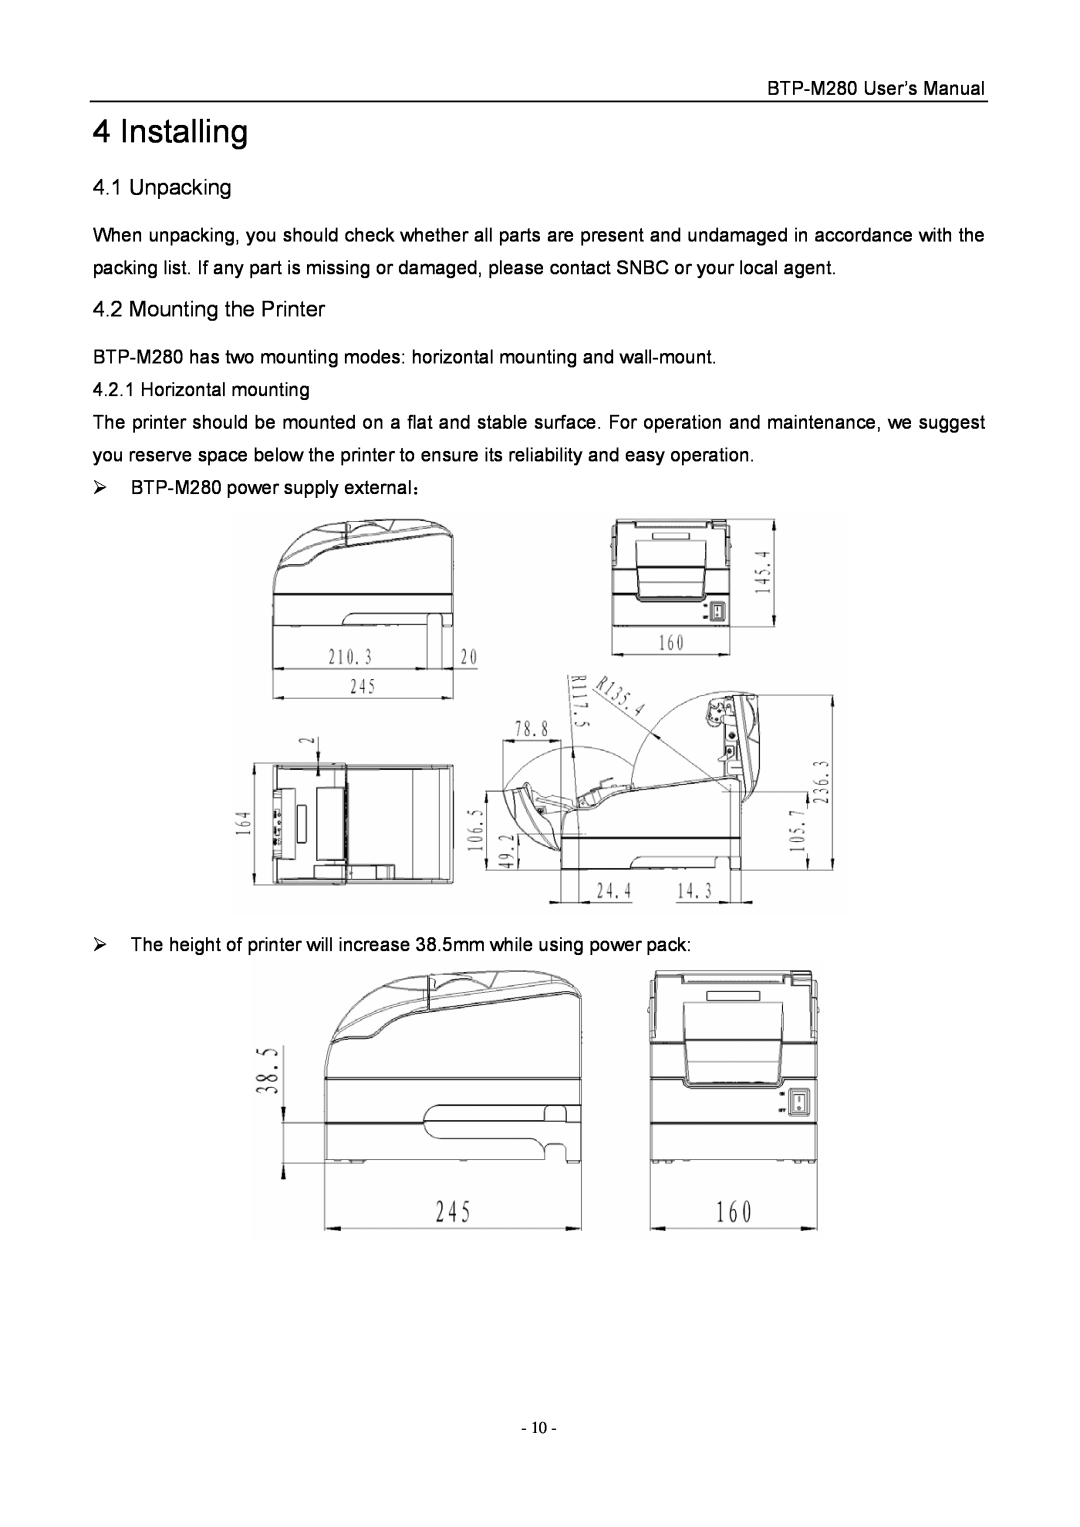 Jiaye General Merchandise Co BTP-M280 user manual Installing, Unpacking, Mounting the Printer 